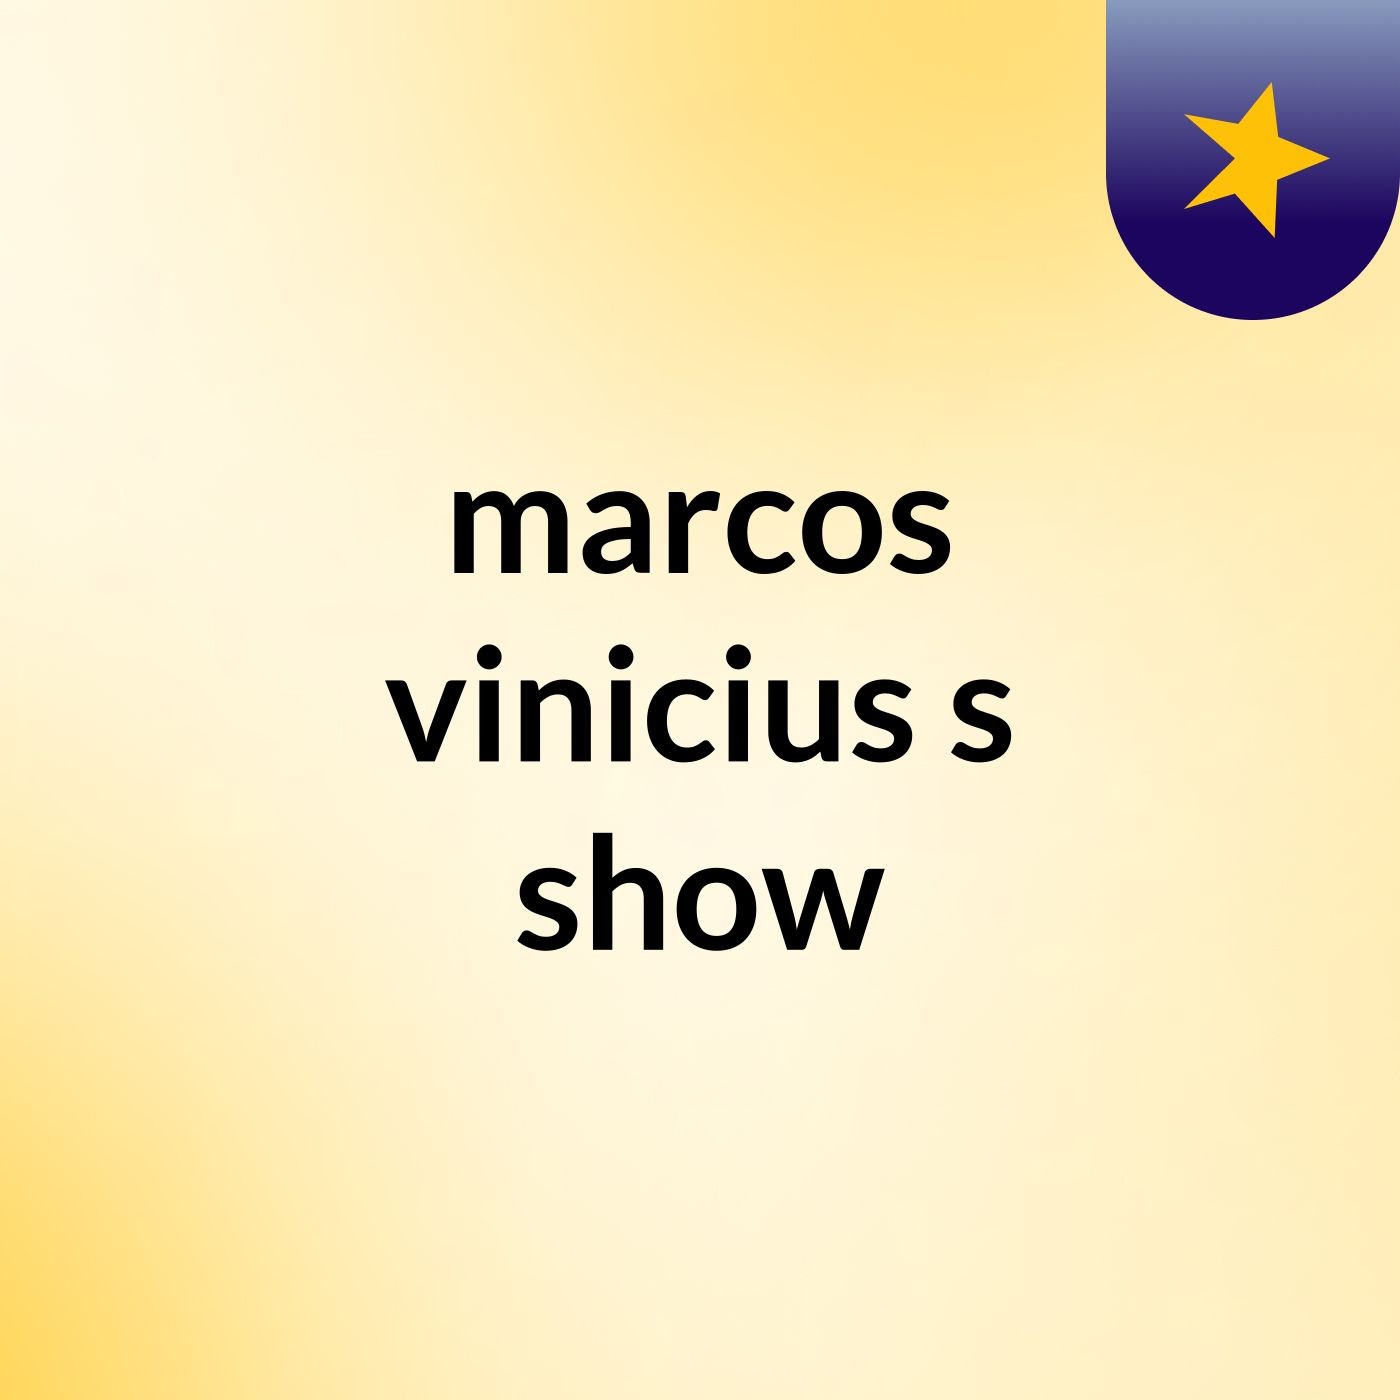 marcos #vinicius's show